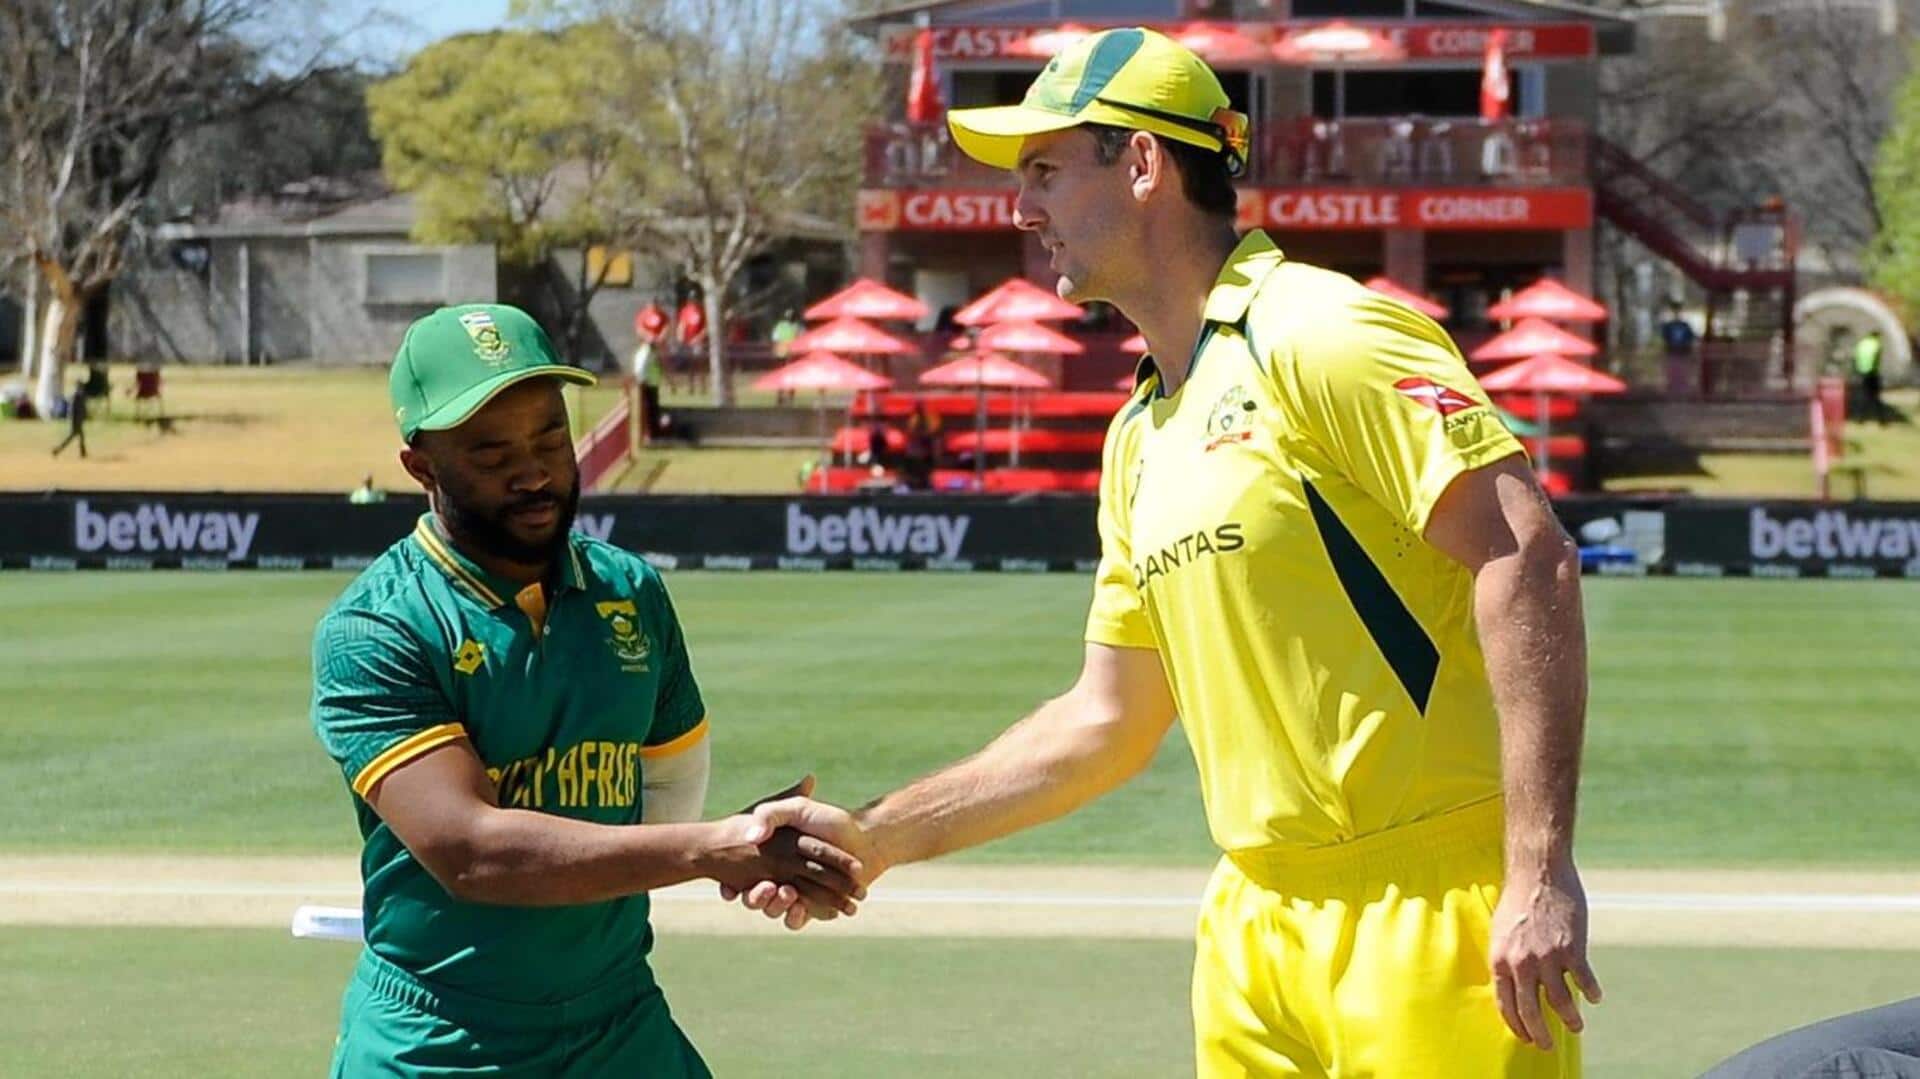 दक्षिण अफ्रीका बनाम ऑस्ट्रेलिया: जोश इंगलिस ने लगाया वनडे करियर का पहला अर्धशतक, जानिए उनके आंकड़े